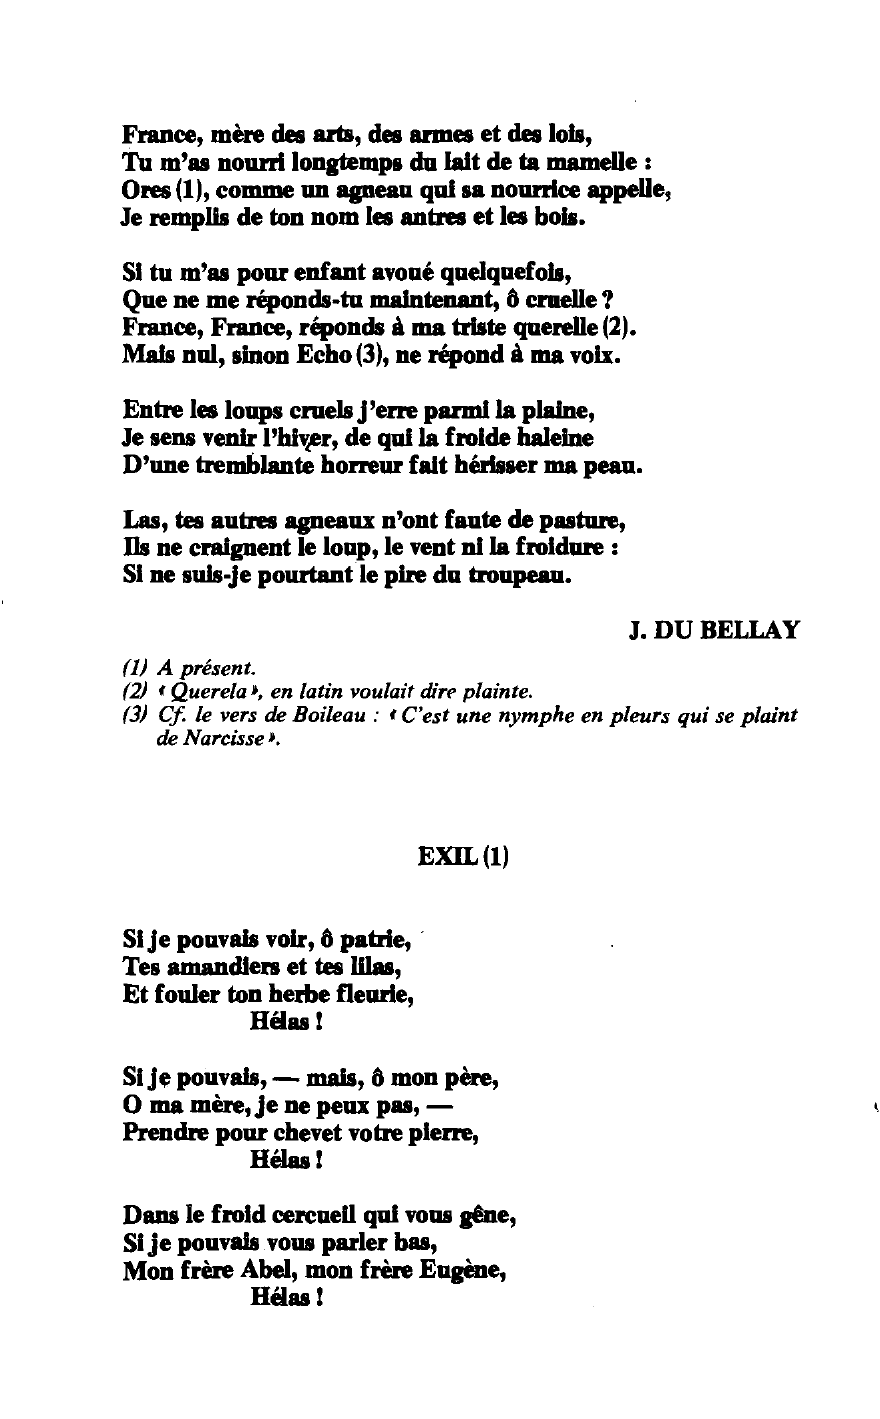 Prévisualisation du document 'Exil' de Victor Hugo et 'France, mère des arts, des armes et des lois' Du Bellay, commentaire comparé